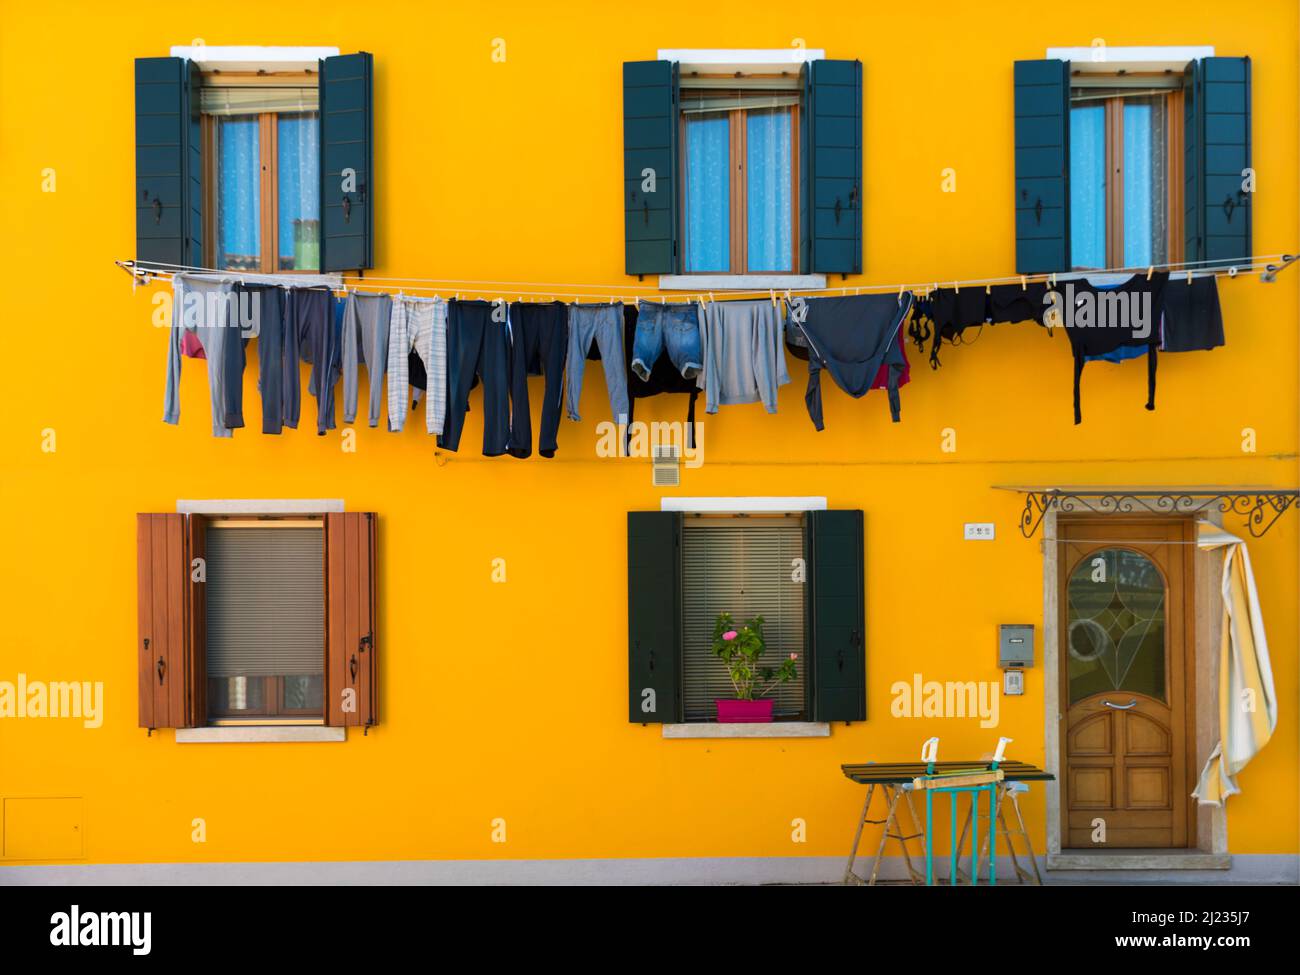 Italia, Venezia, case colorate con lavanderia appese sull'isola veneziana di Burano Foto Stock